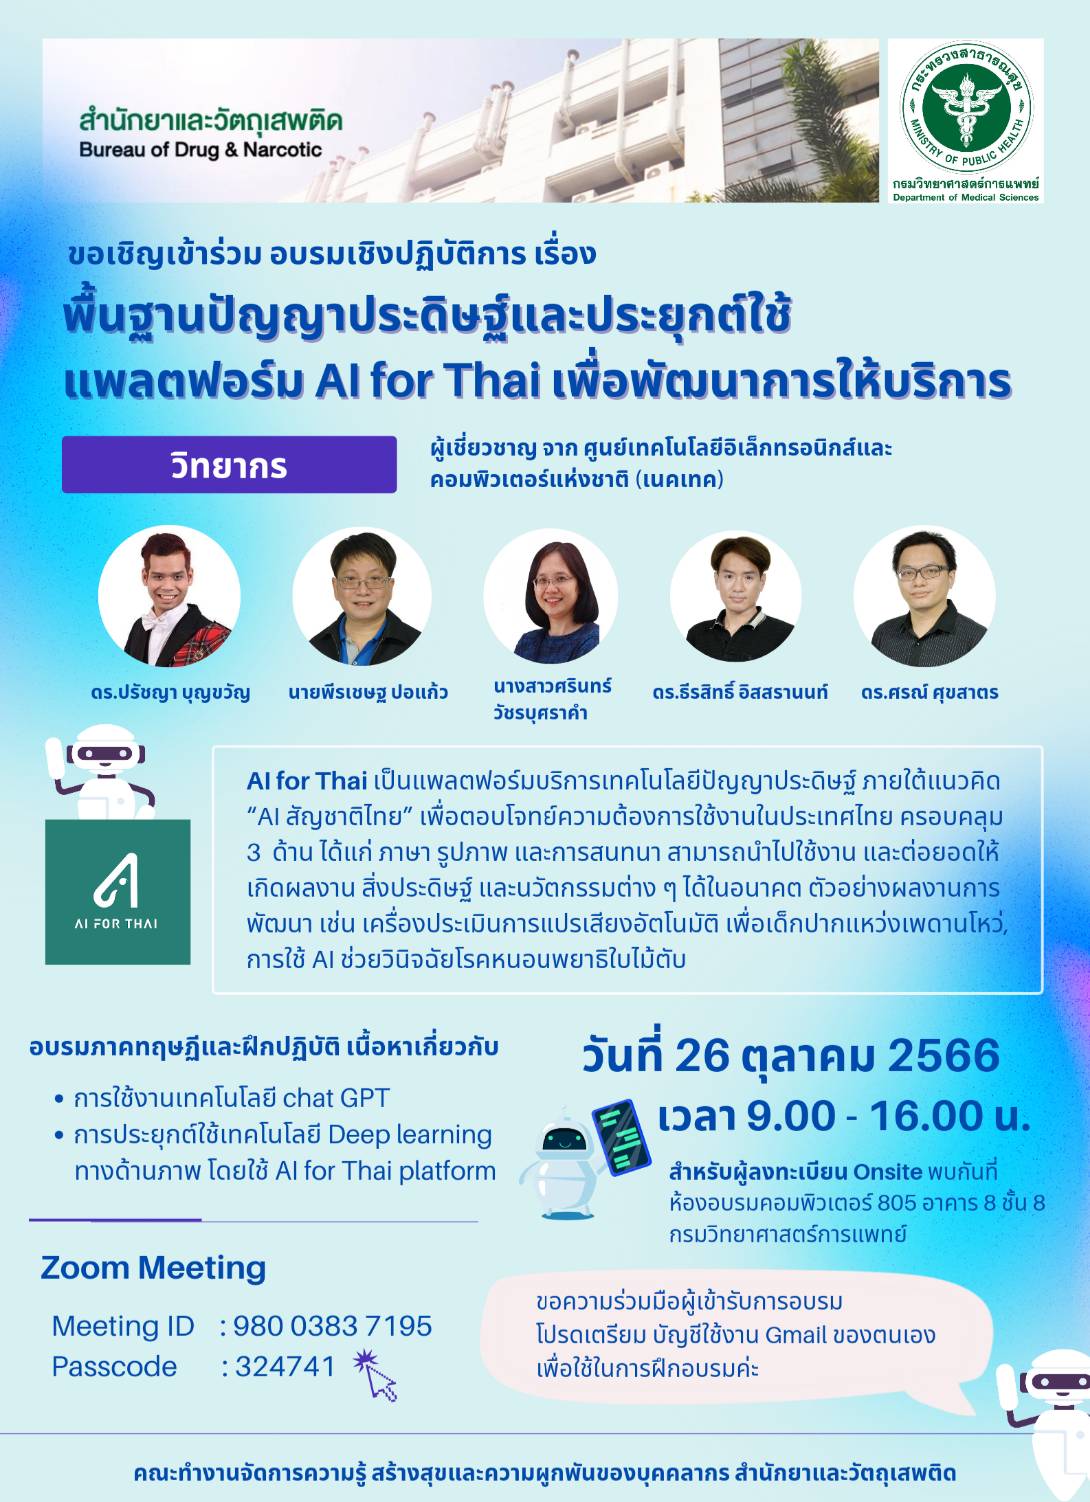 ขอเชิญอบรมฟรี เรื่อง พื้นฐานปัญญาประดิษฐ์และประยุกต์ใช้แพลตฟอร์ม AI for Thai เพื่อพัฒนาการให้บริการ